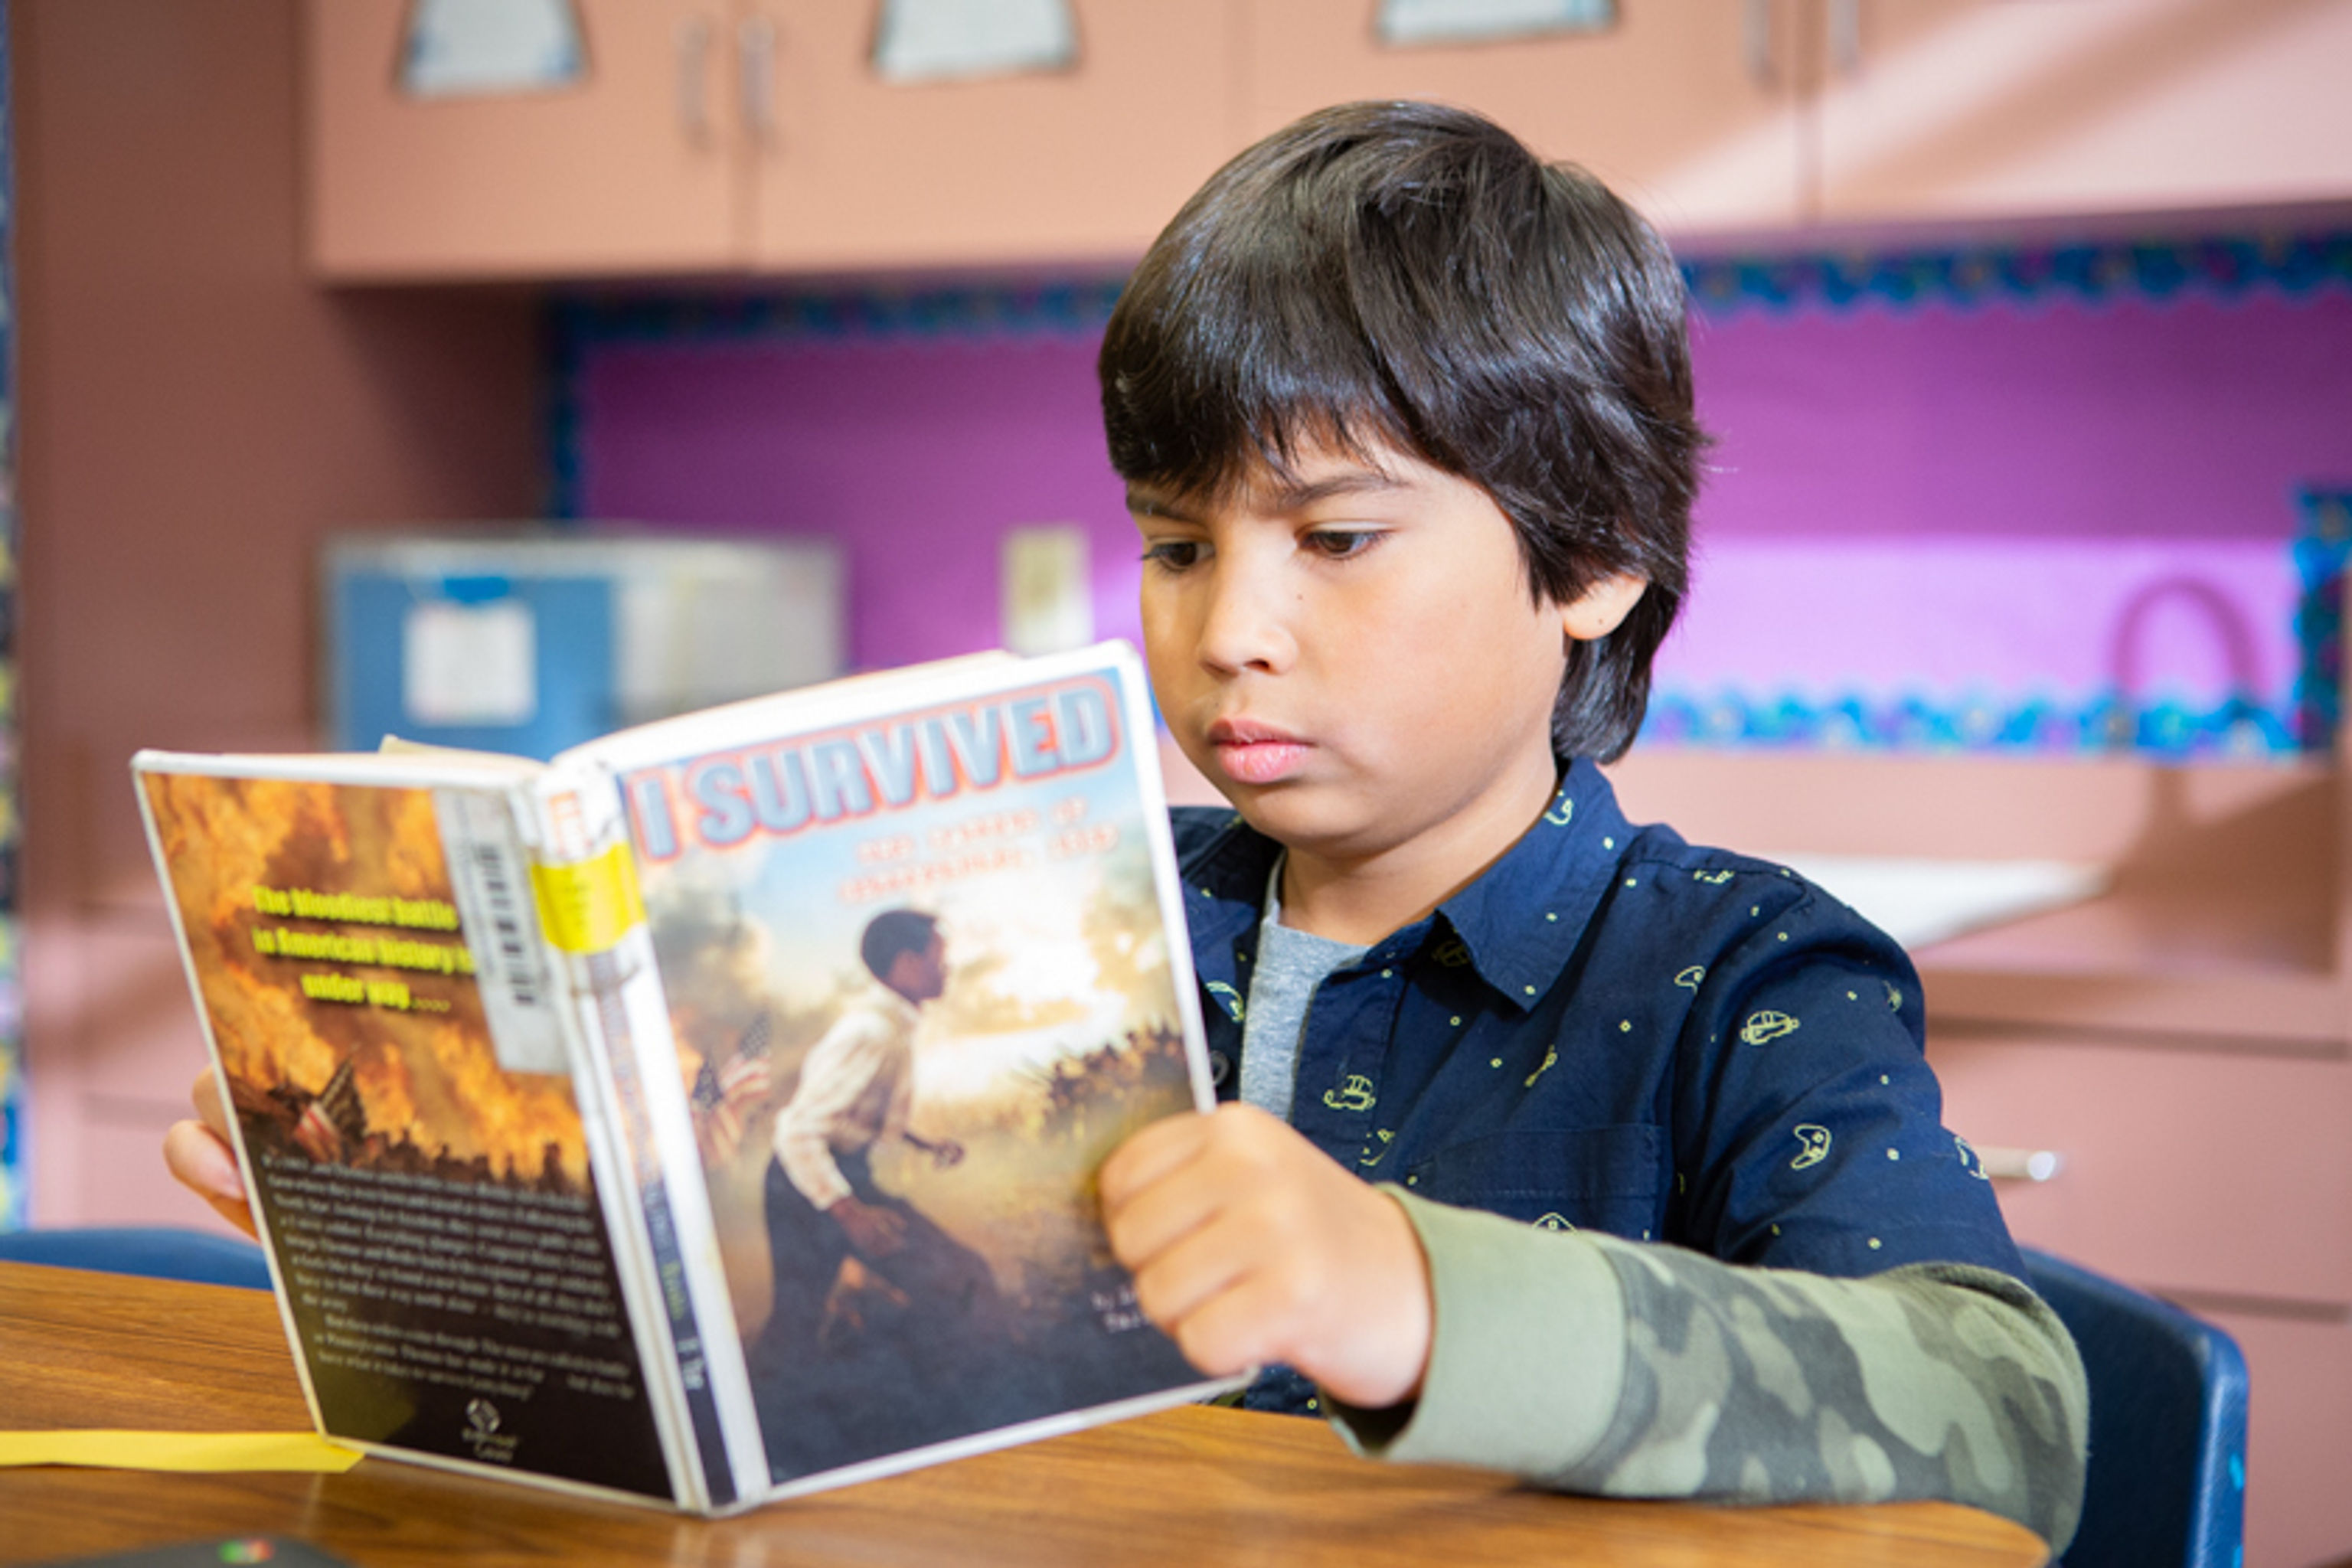 Second grade boy reading a book